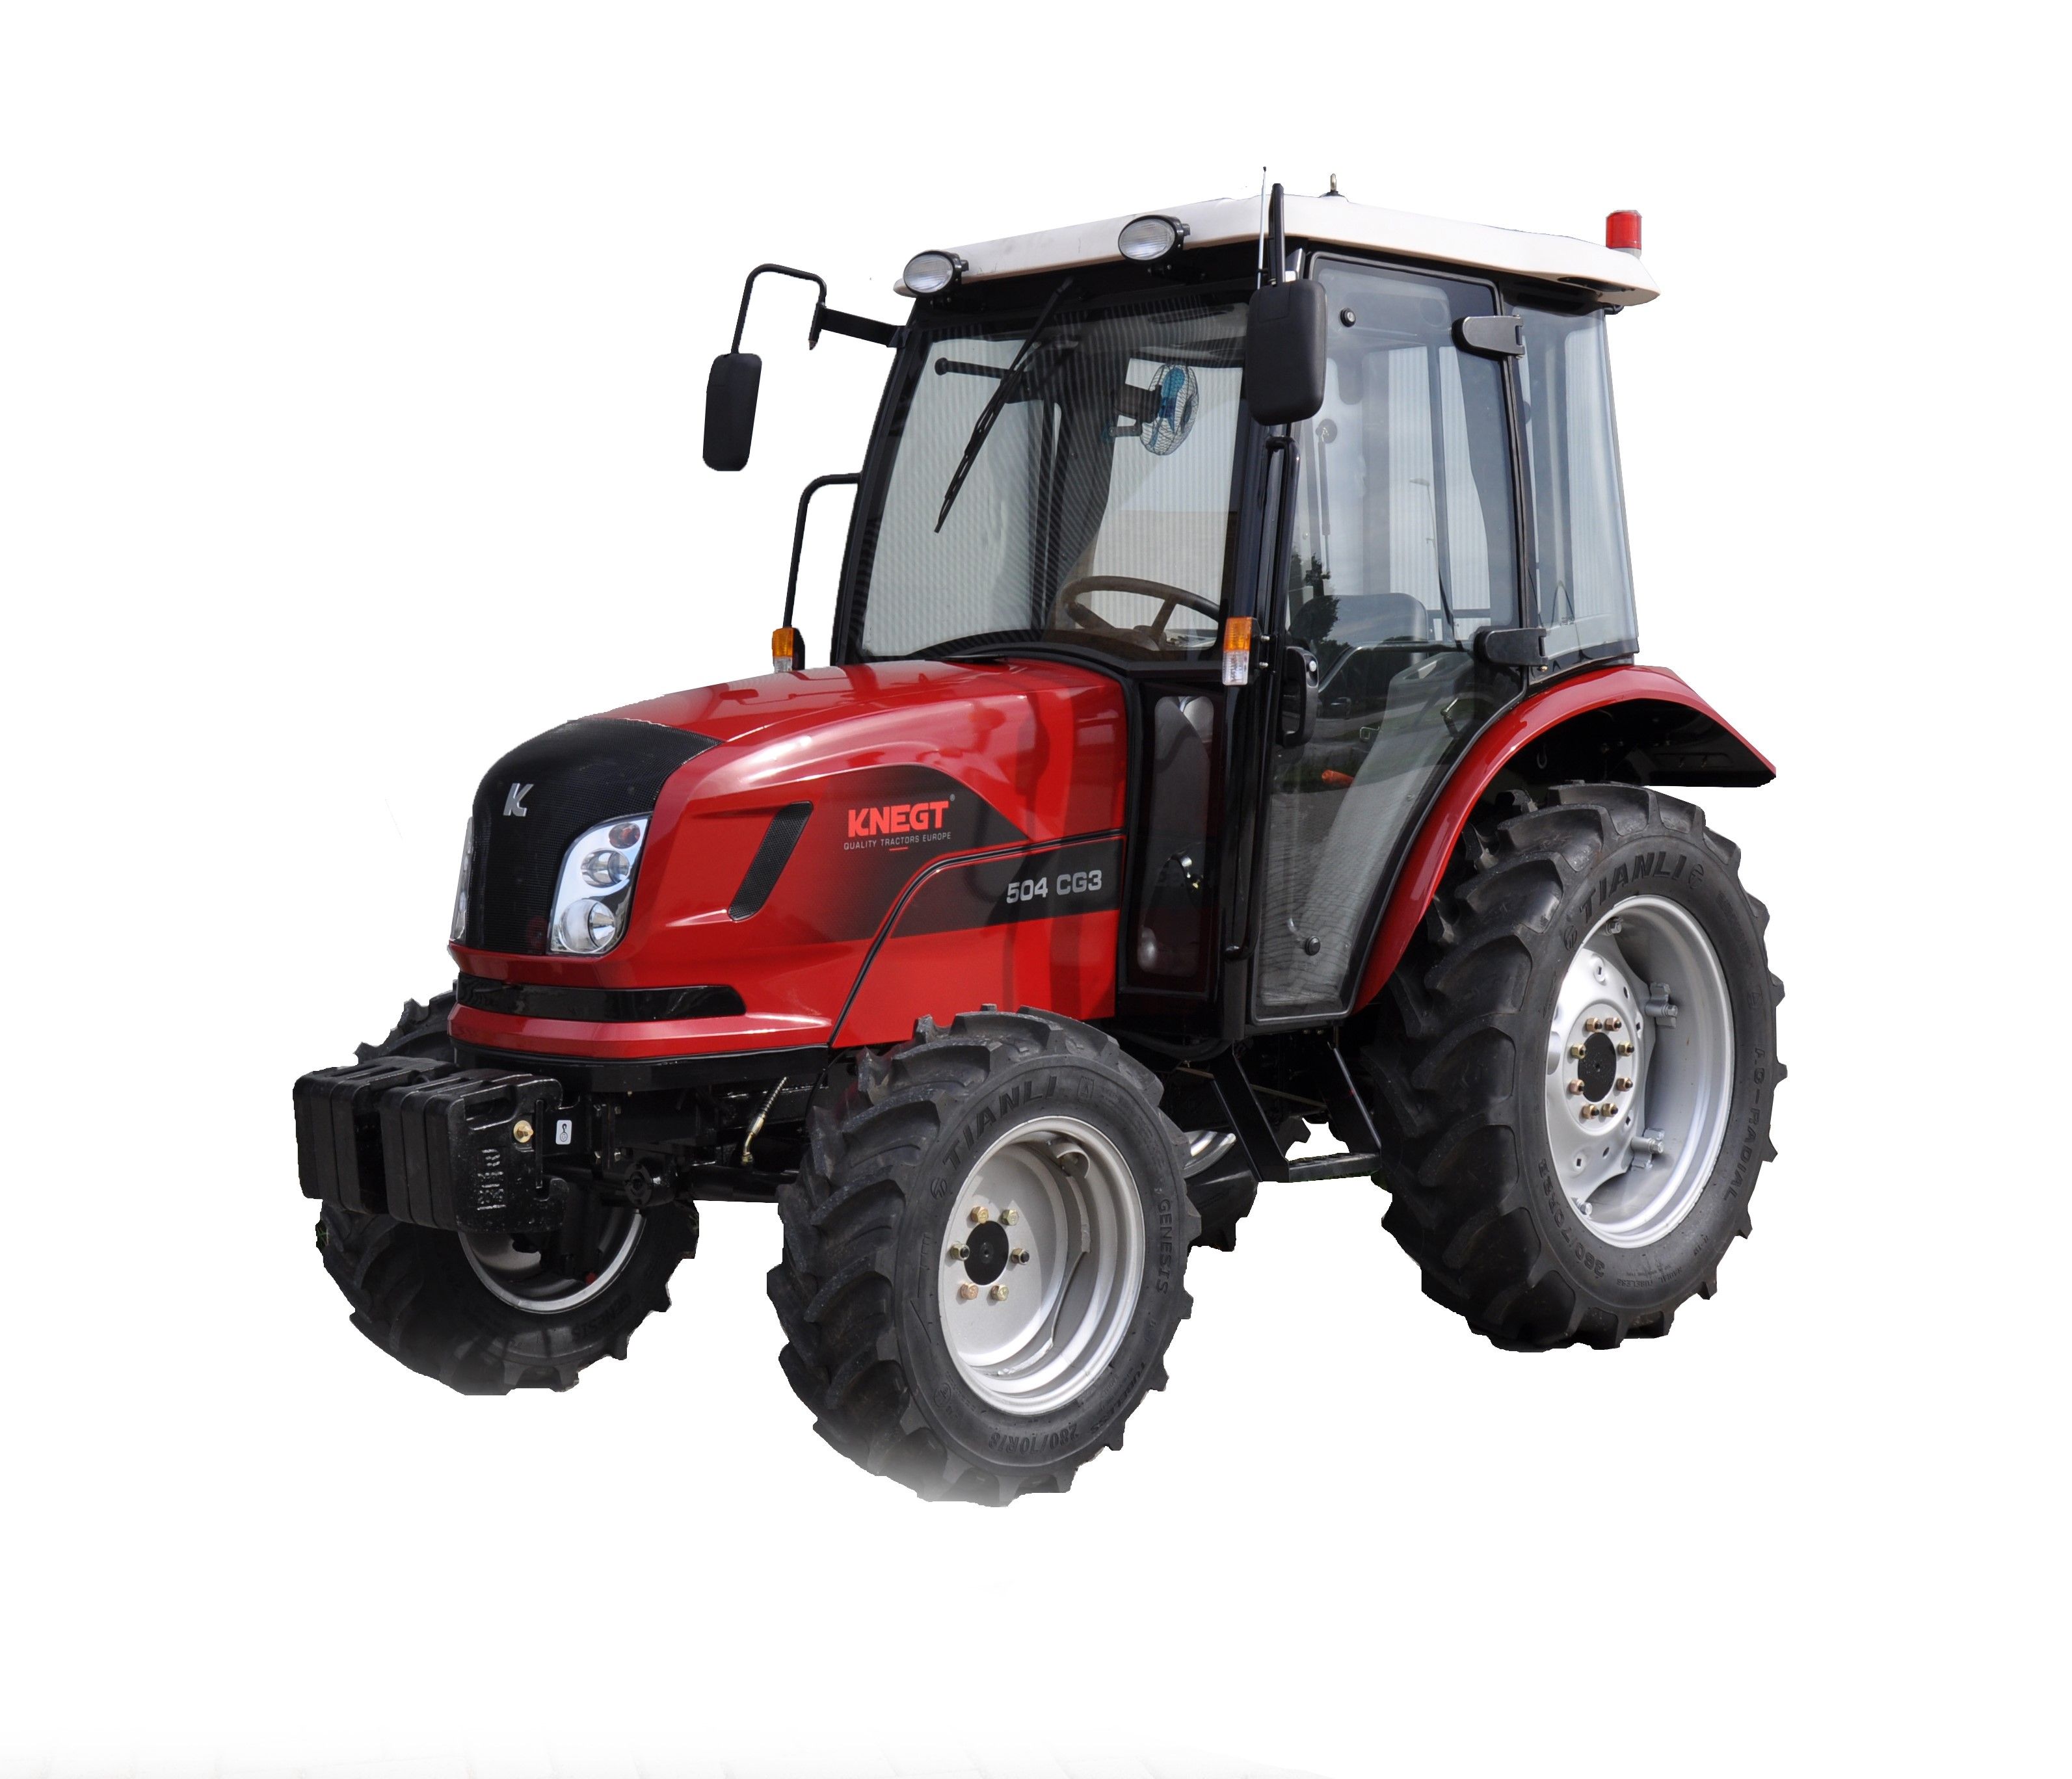 504 g3 - tracteur agricole - knegt - puissance 50 ch avec cabine_0